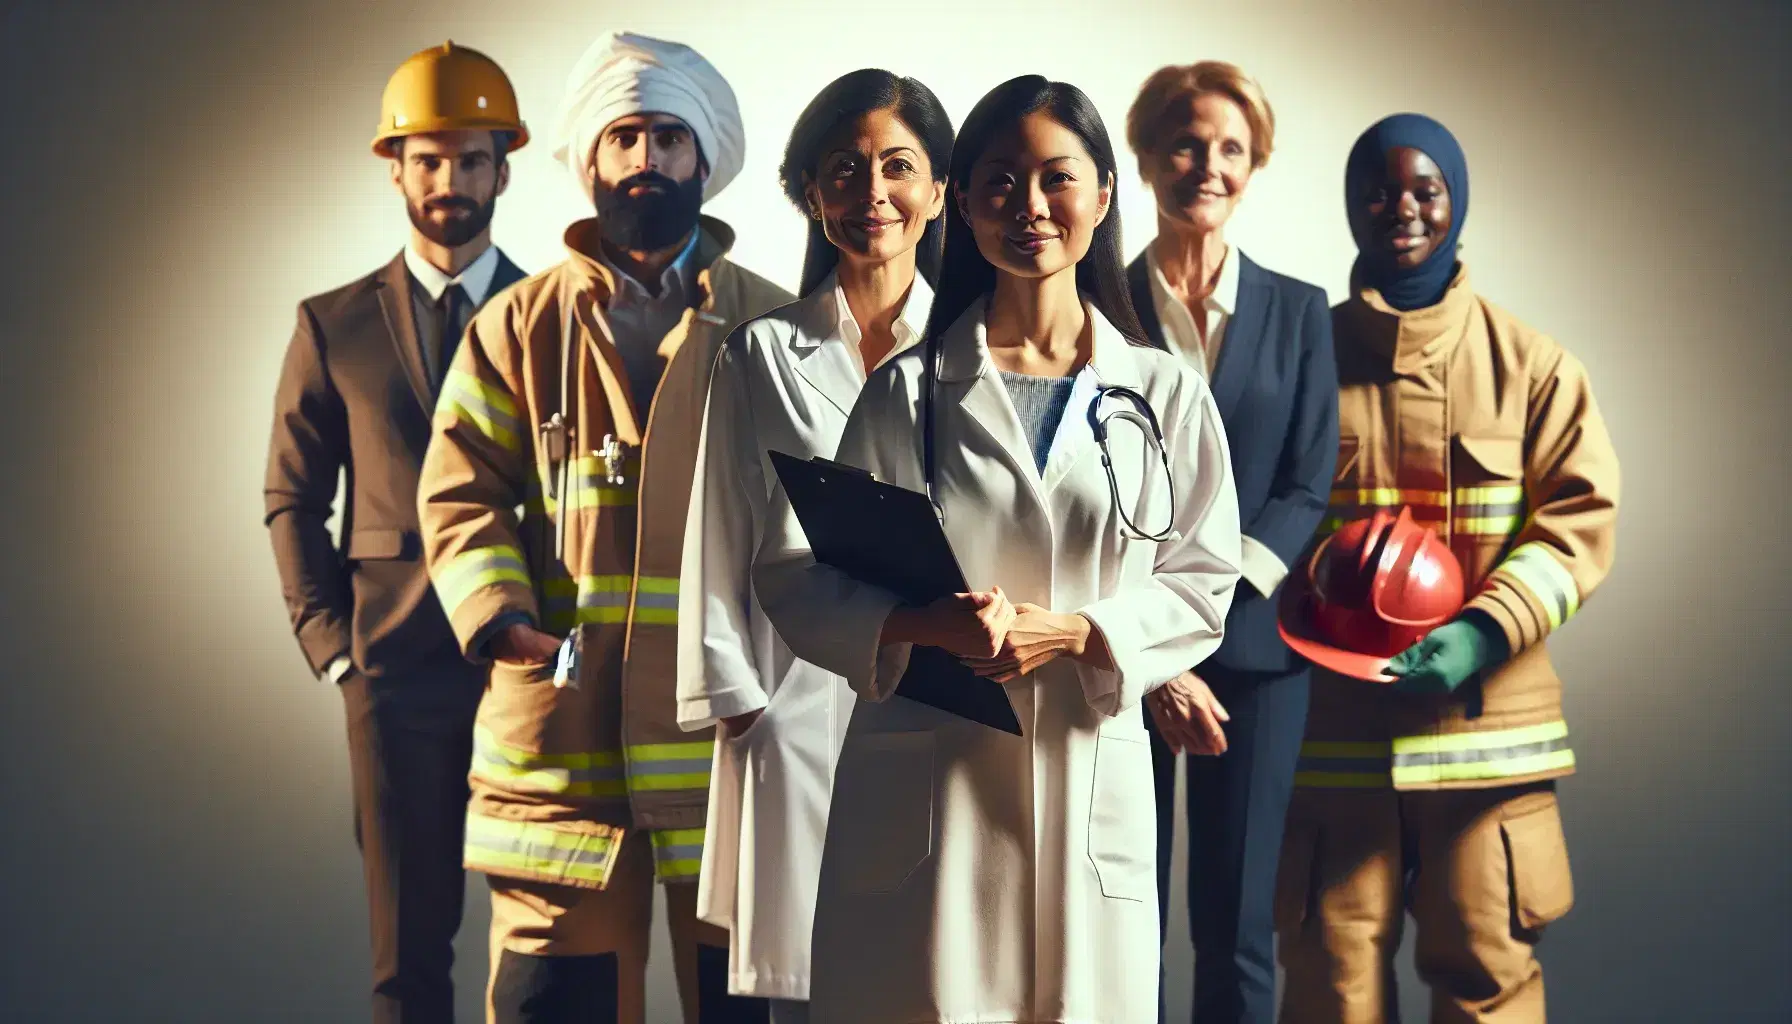 Grupo diverso de profesionales sonriendo, incluyendo una médica, un ingeniero, una chef, un bombero y una graduada, en un fondo neutro.